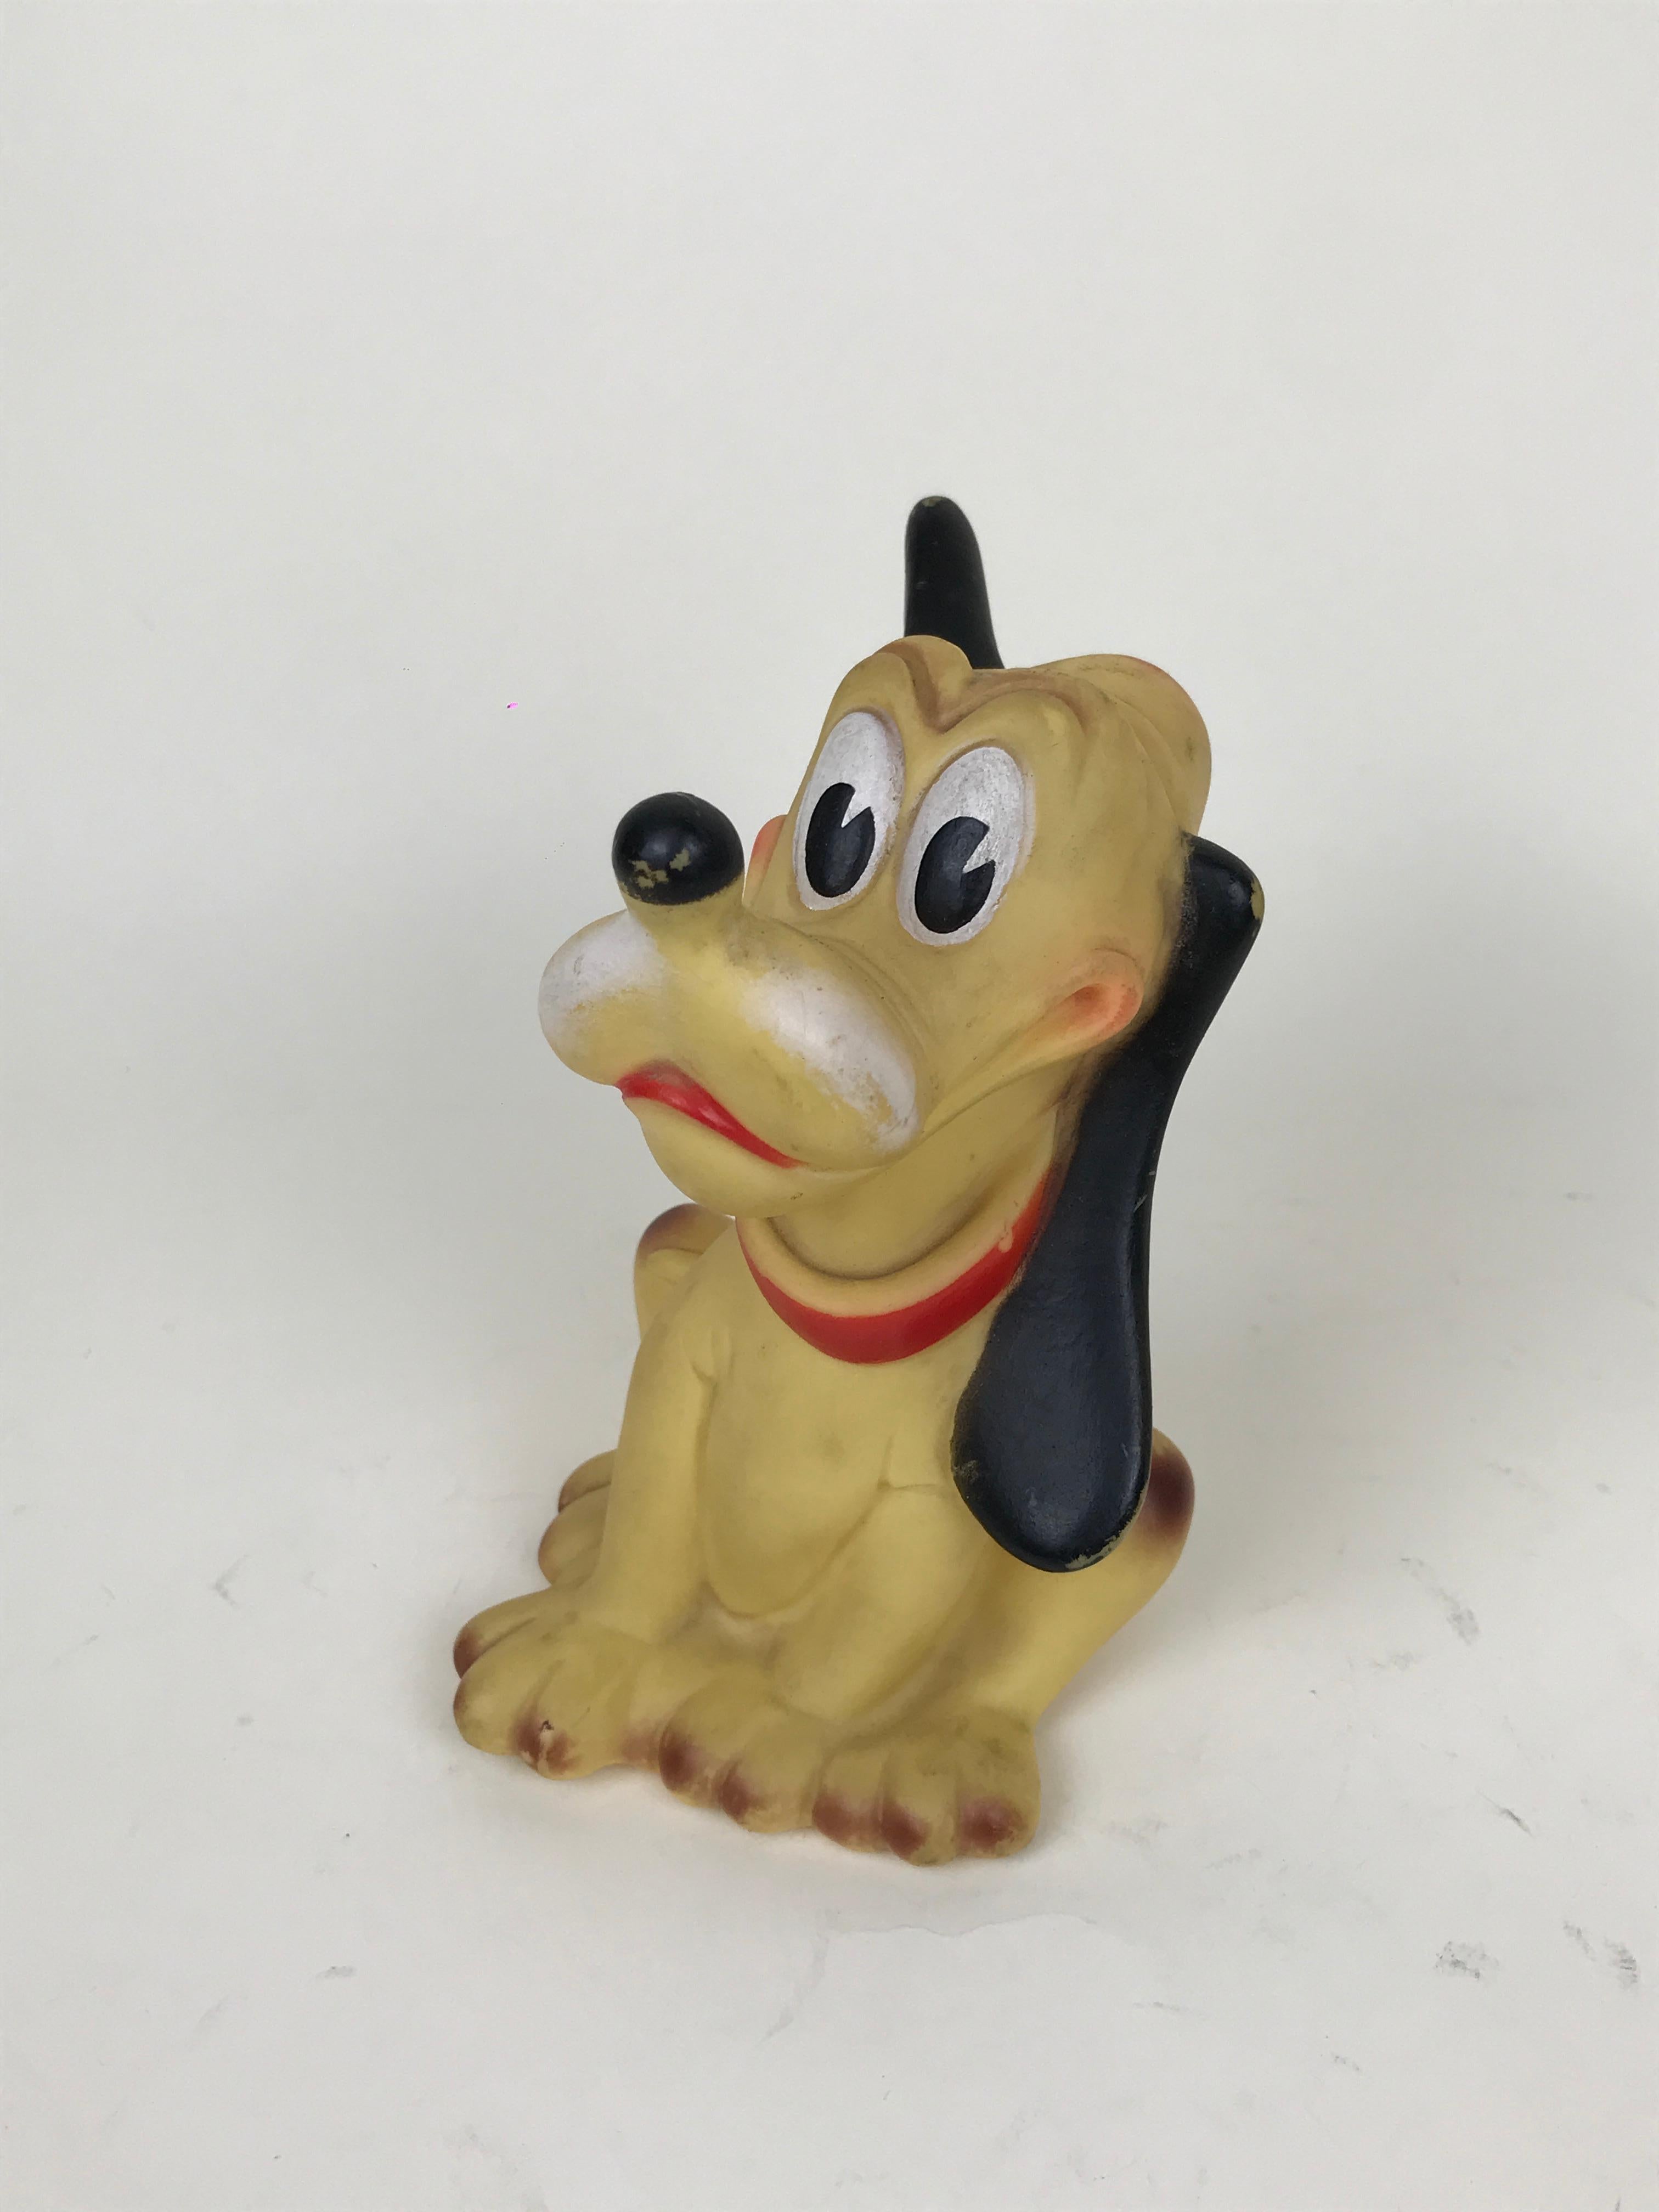 Italian 1960s Vintage Original Disney Pluto Rubber Squeak Toy Made in Italy Ledraplastic